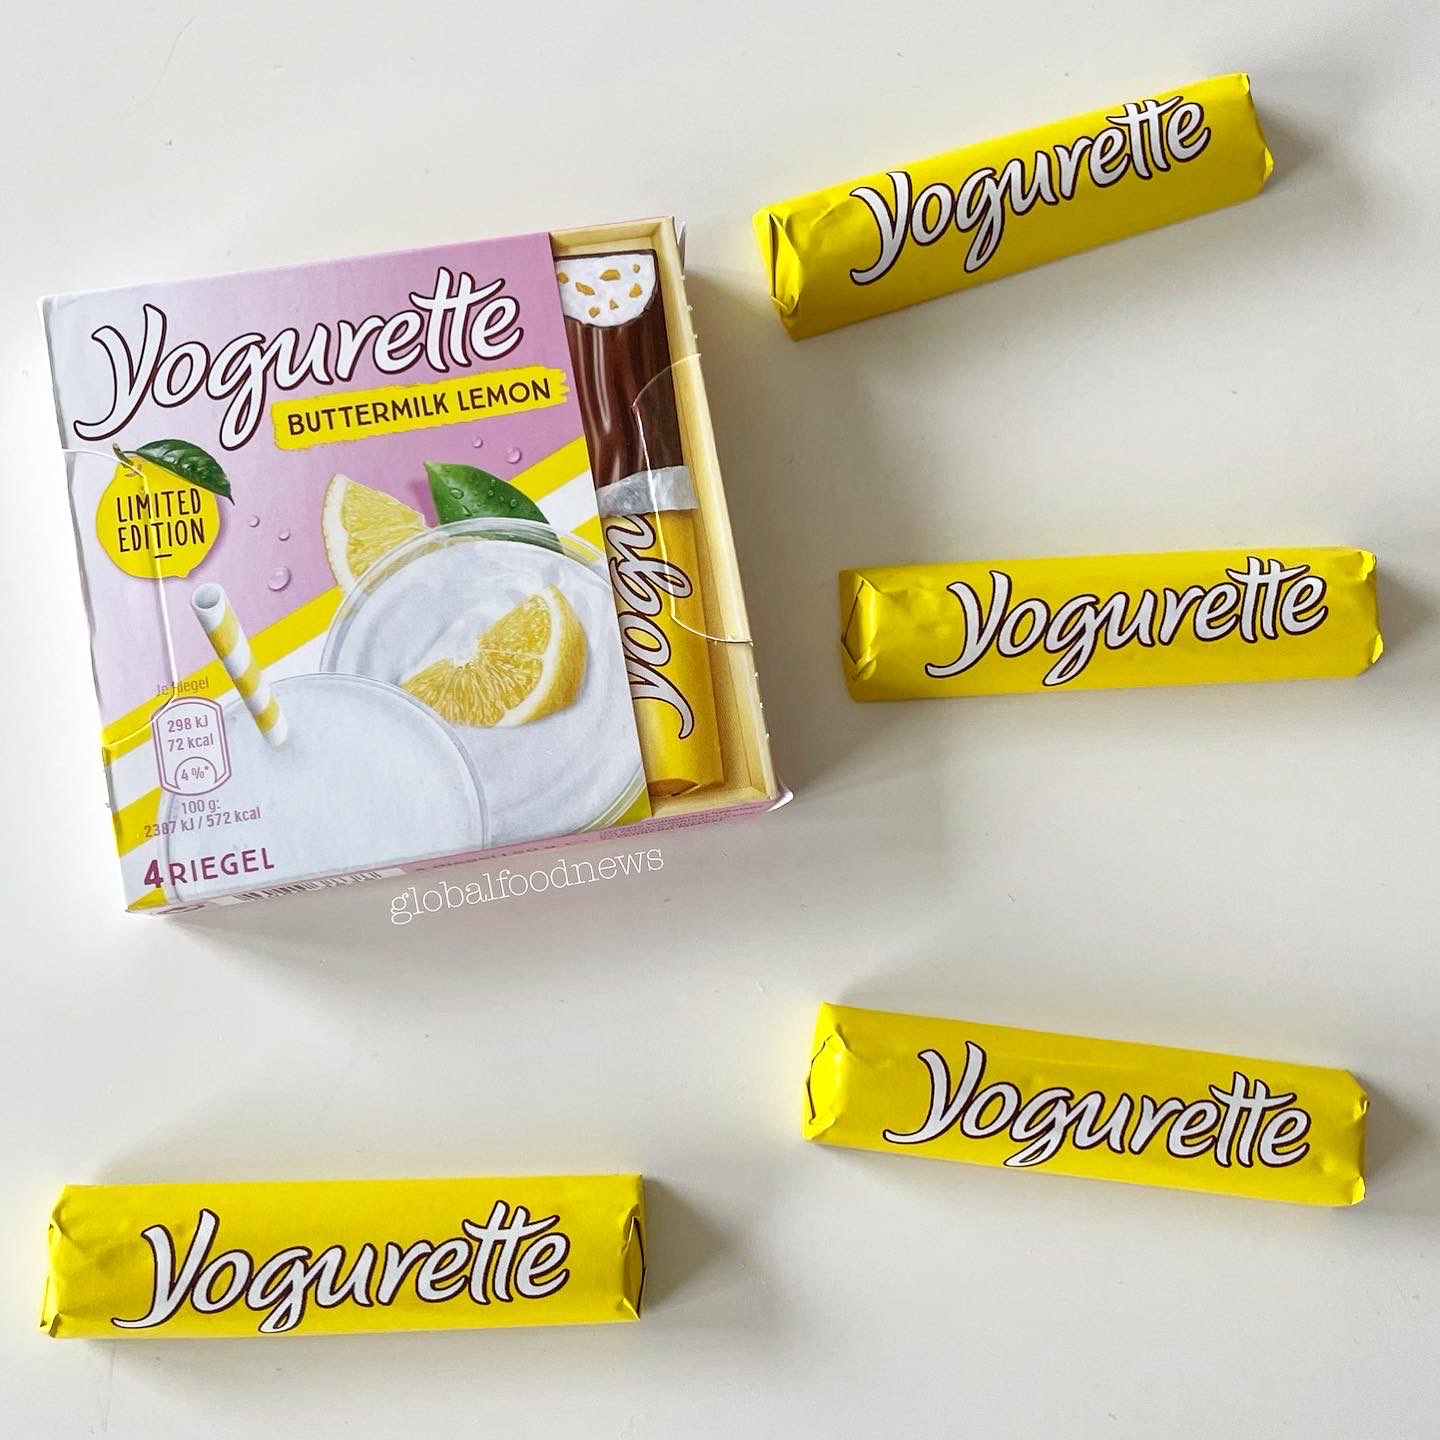 Global / • Buttermilk #limitededition #Germany 🍋 yogurette X: #ferrero #buttermilklemon Edition # on Limited https://t.co/XHc56J8FaP\